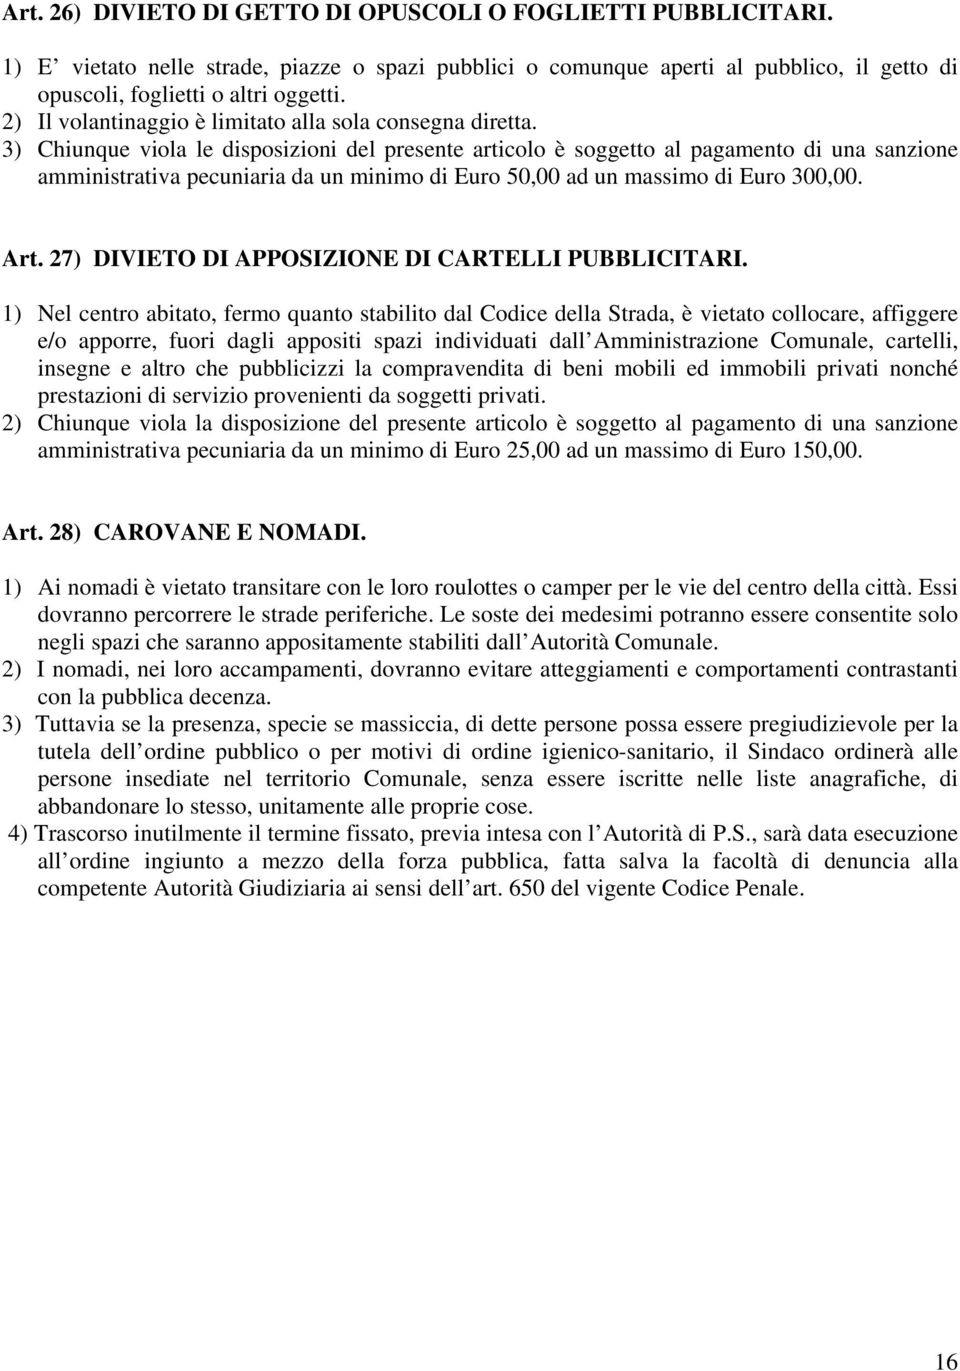 27) DIVIETO DI APPOSIZIONE DI CARTELLI PUBBLICITARI.